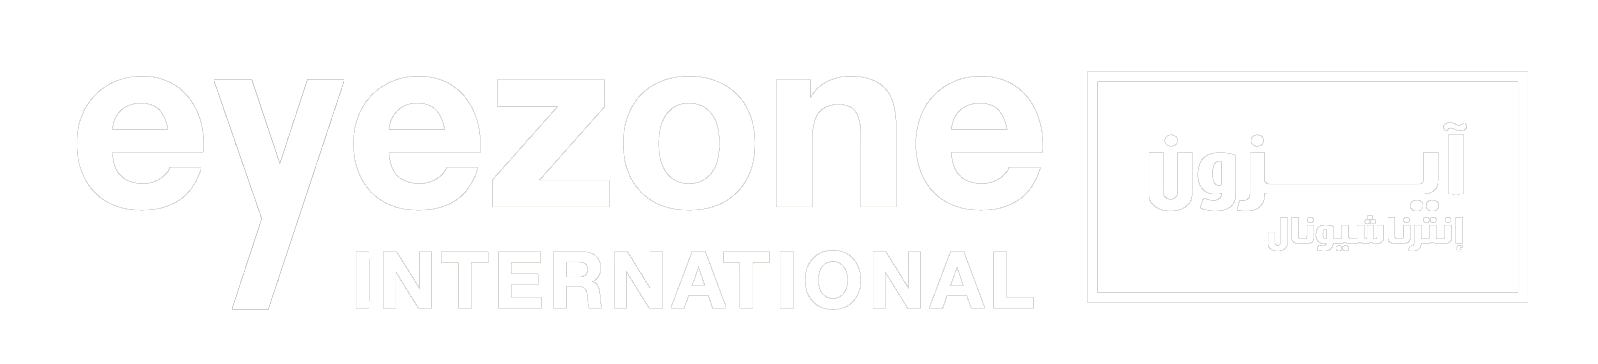 Eyezone International